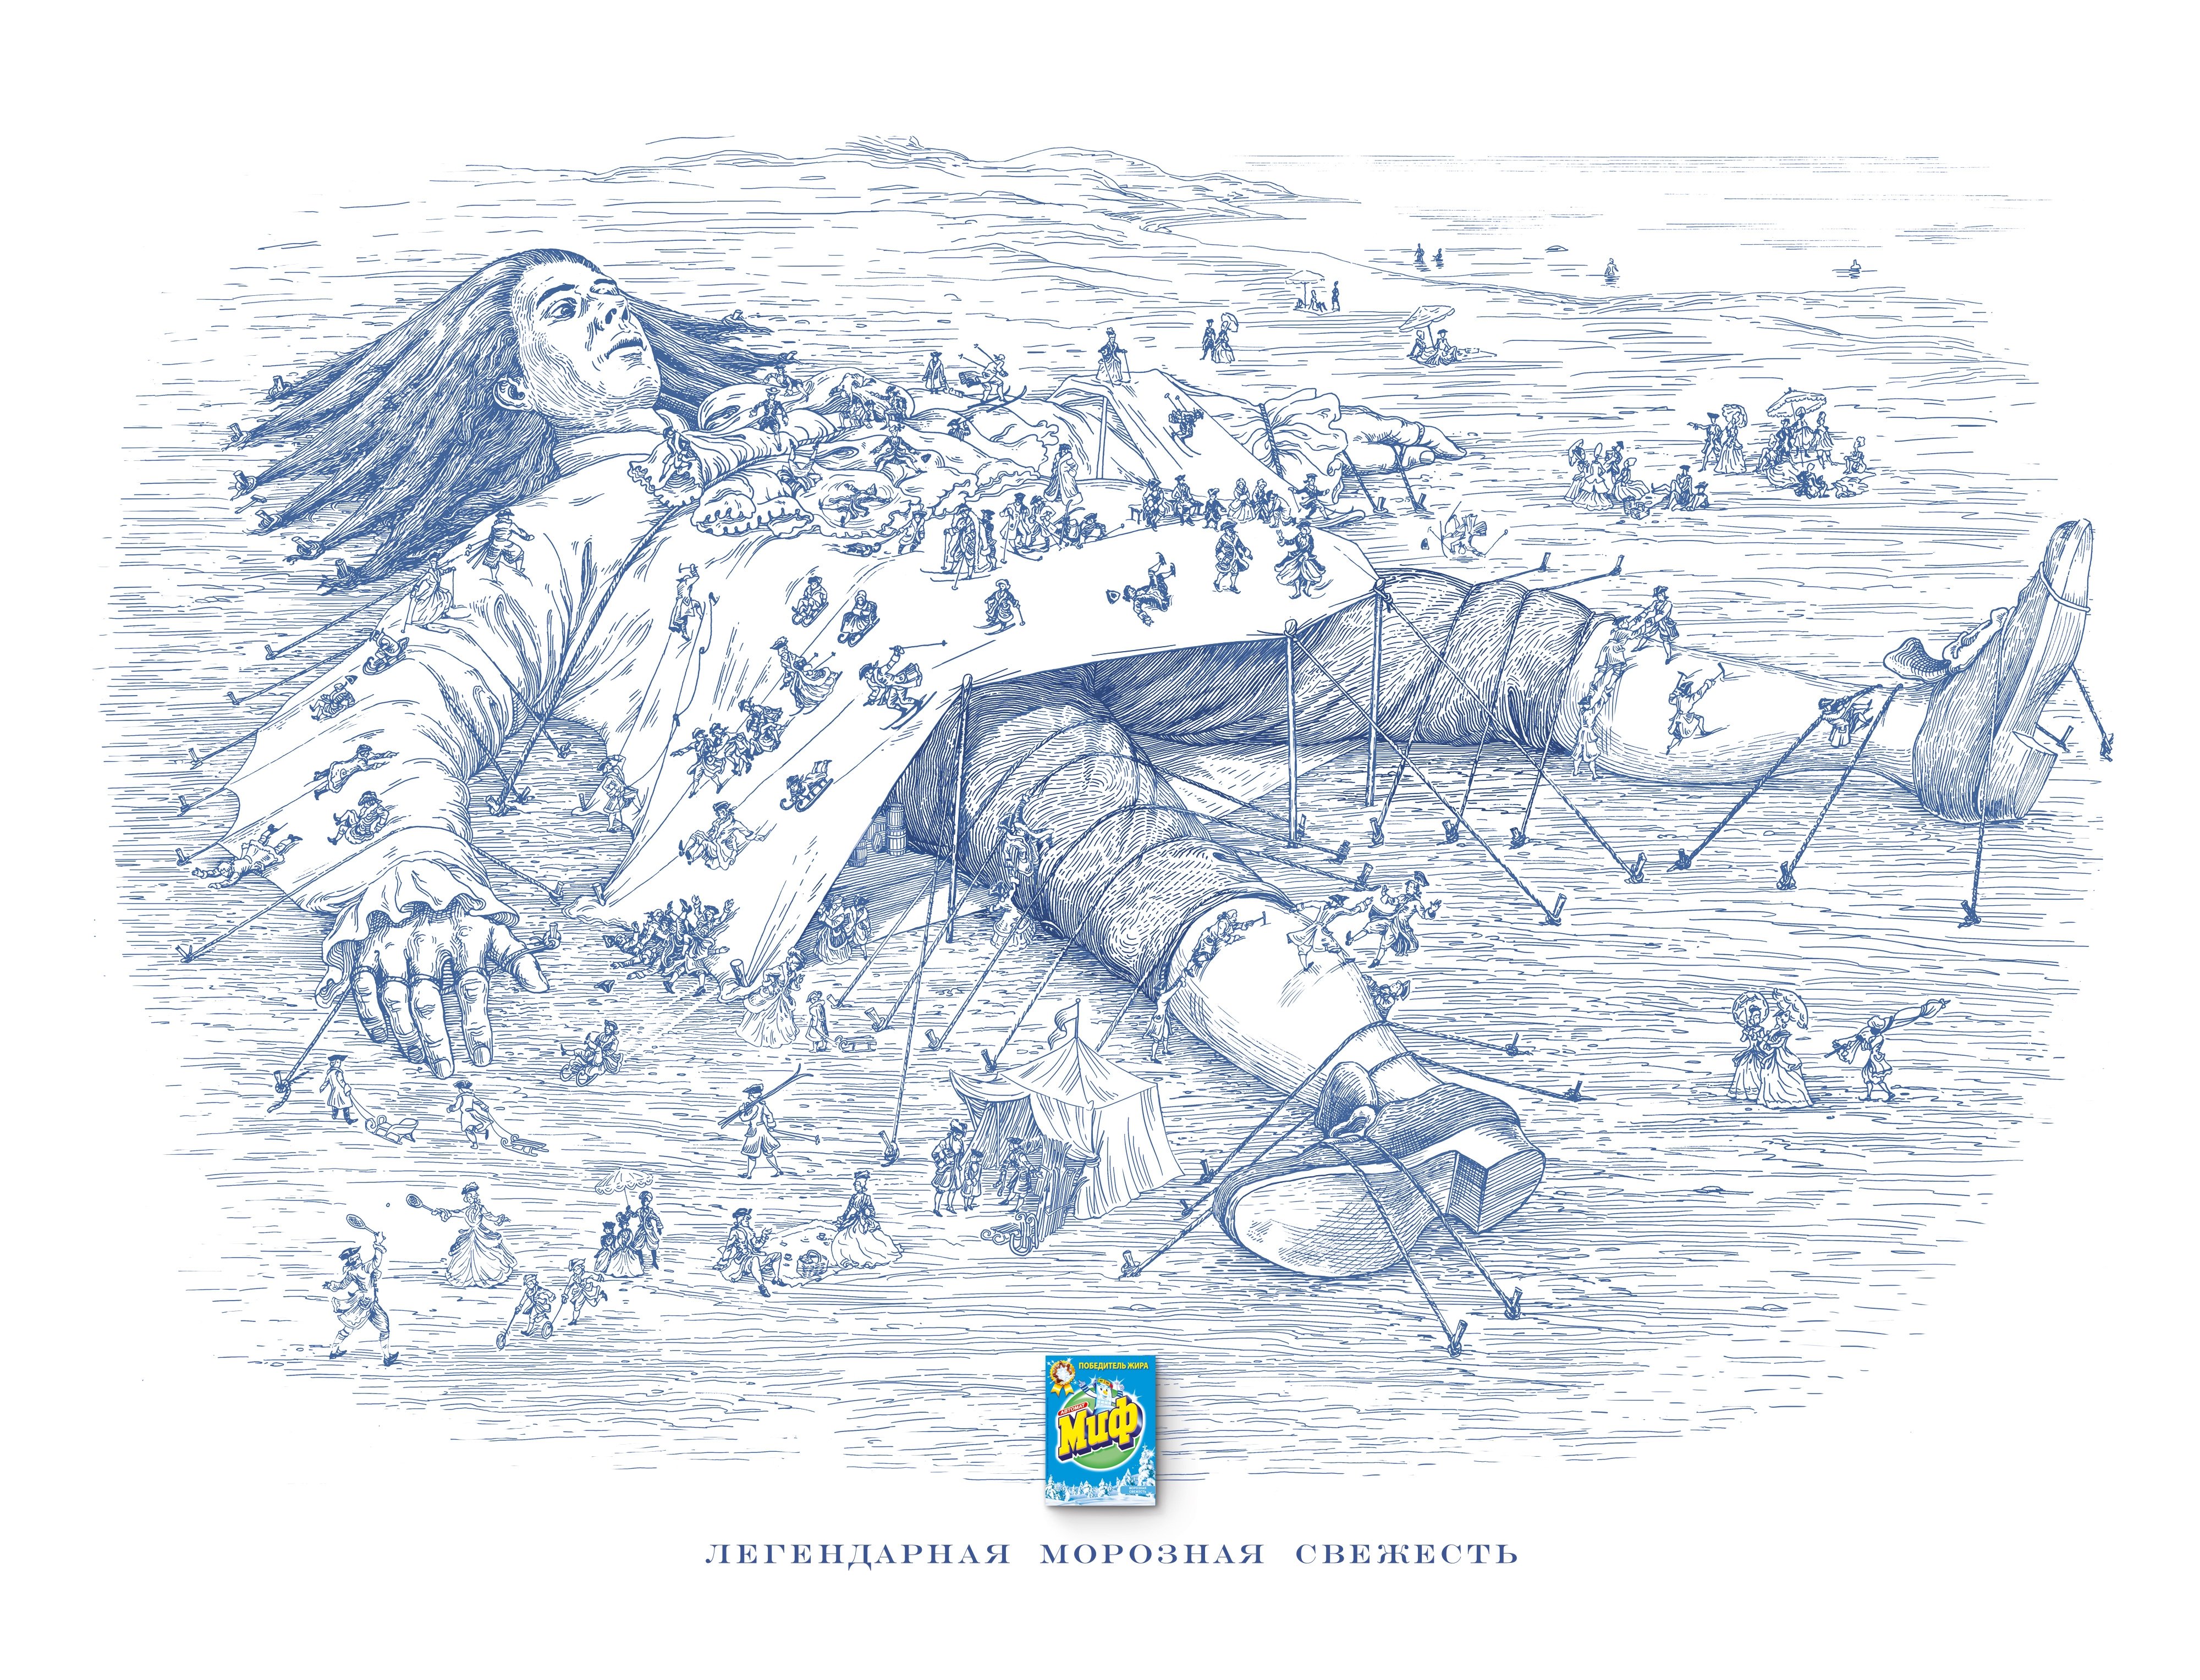 Иллюстрация к произведению путешествие Гулливера в Лилипутию